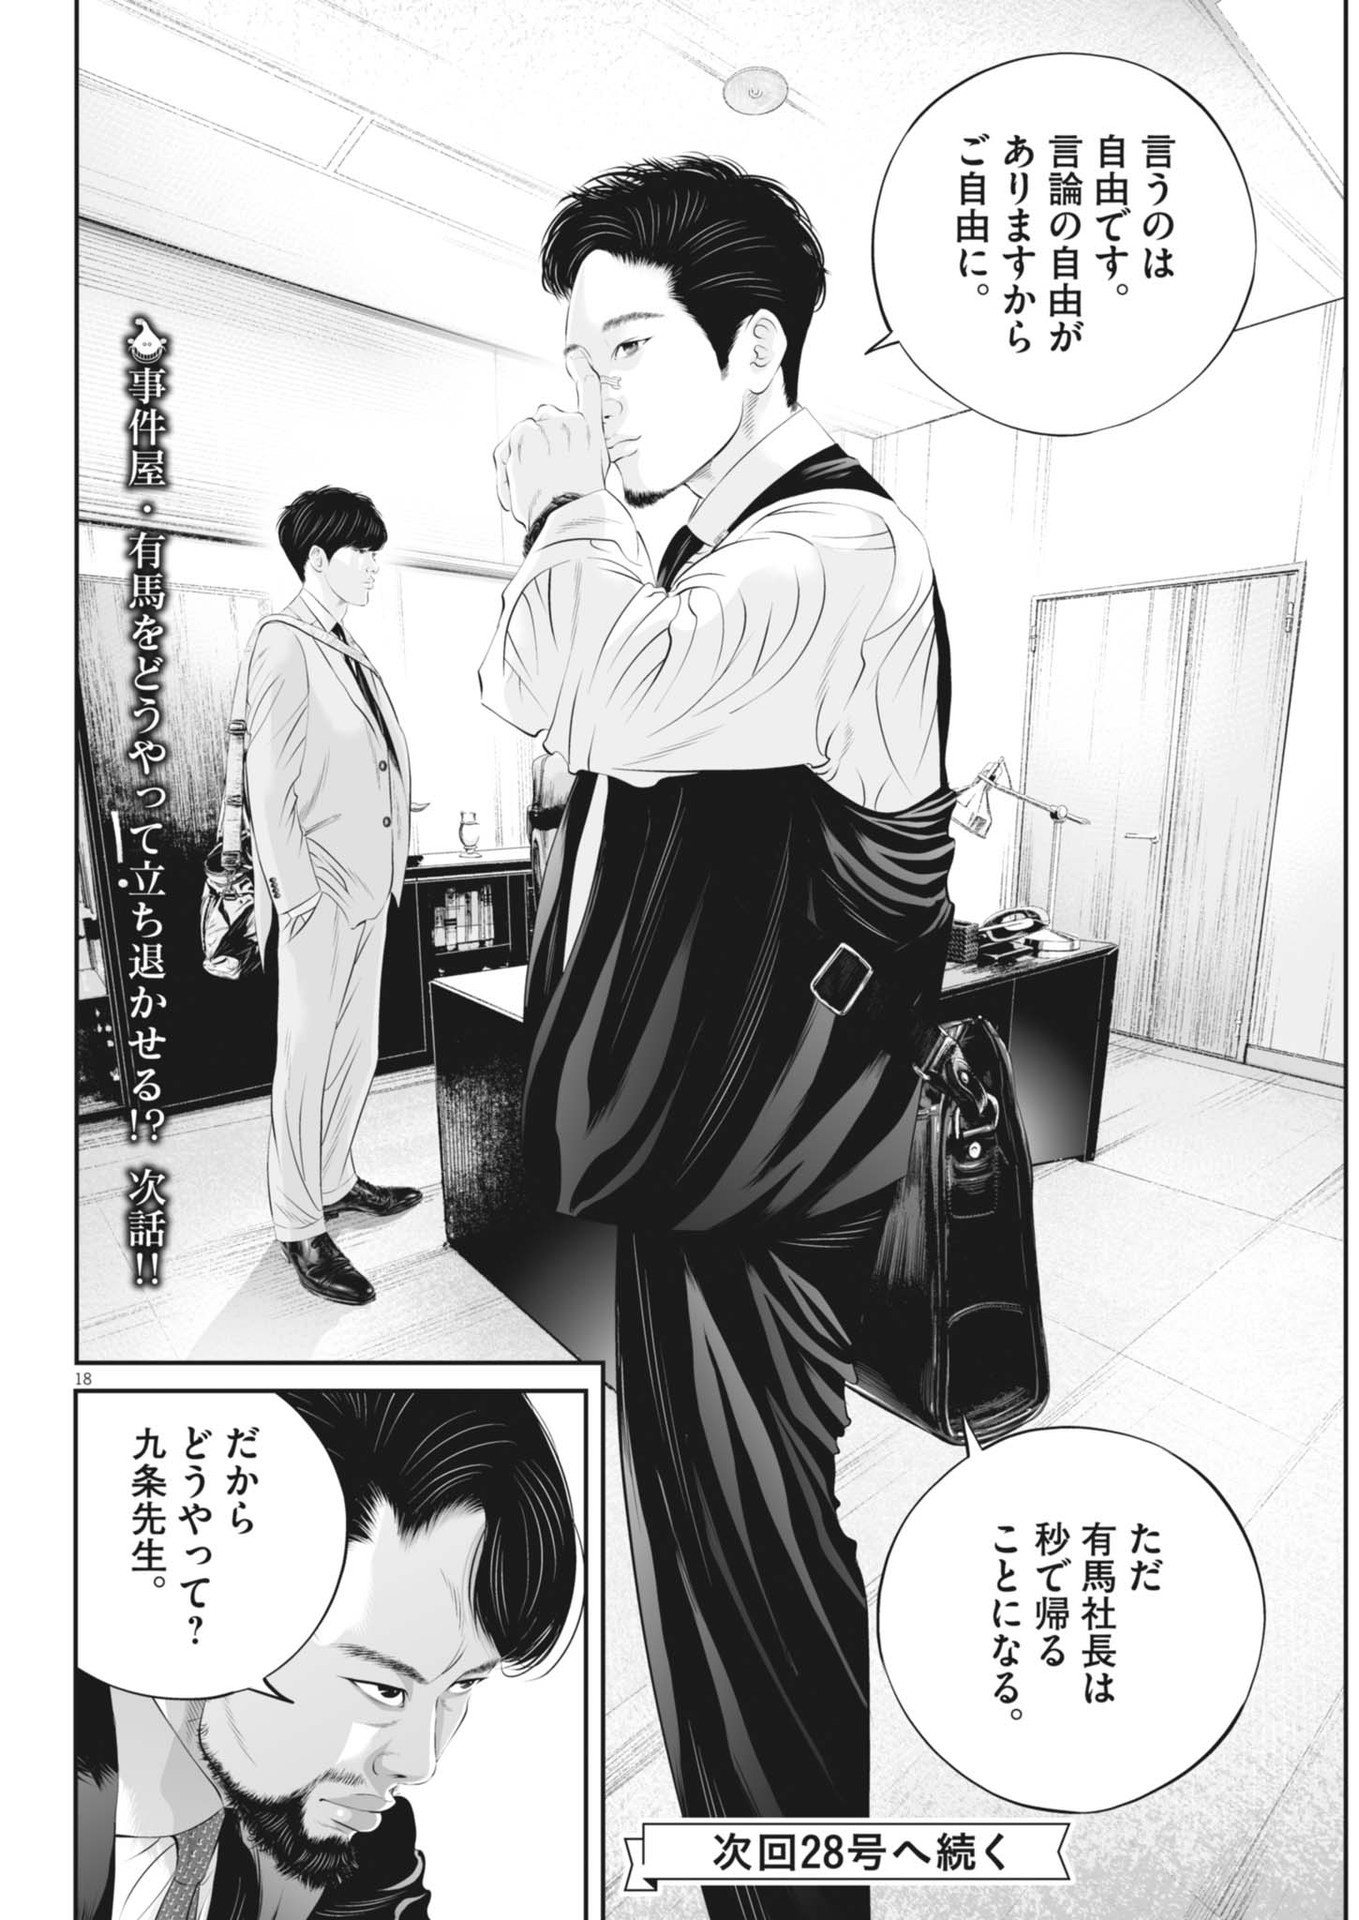 Kujou no Taizai - Chapter 101 - Page 18